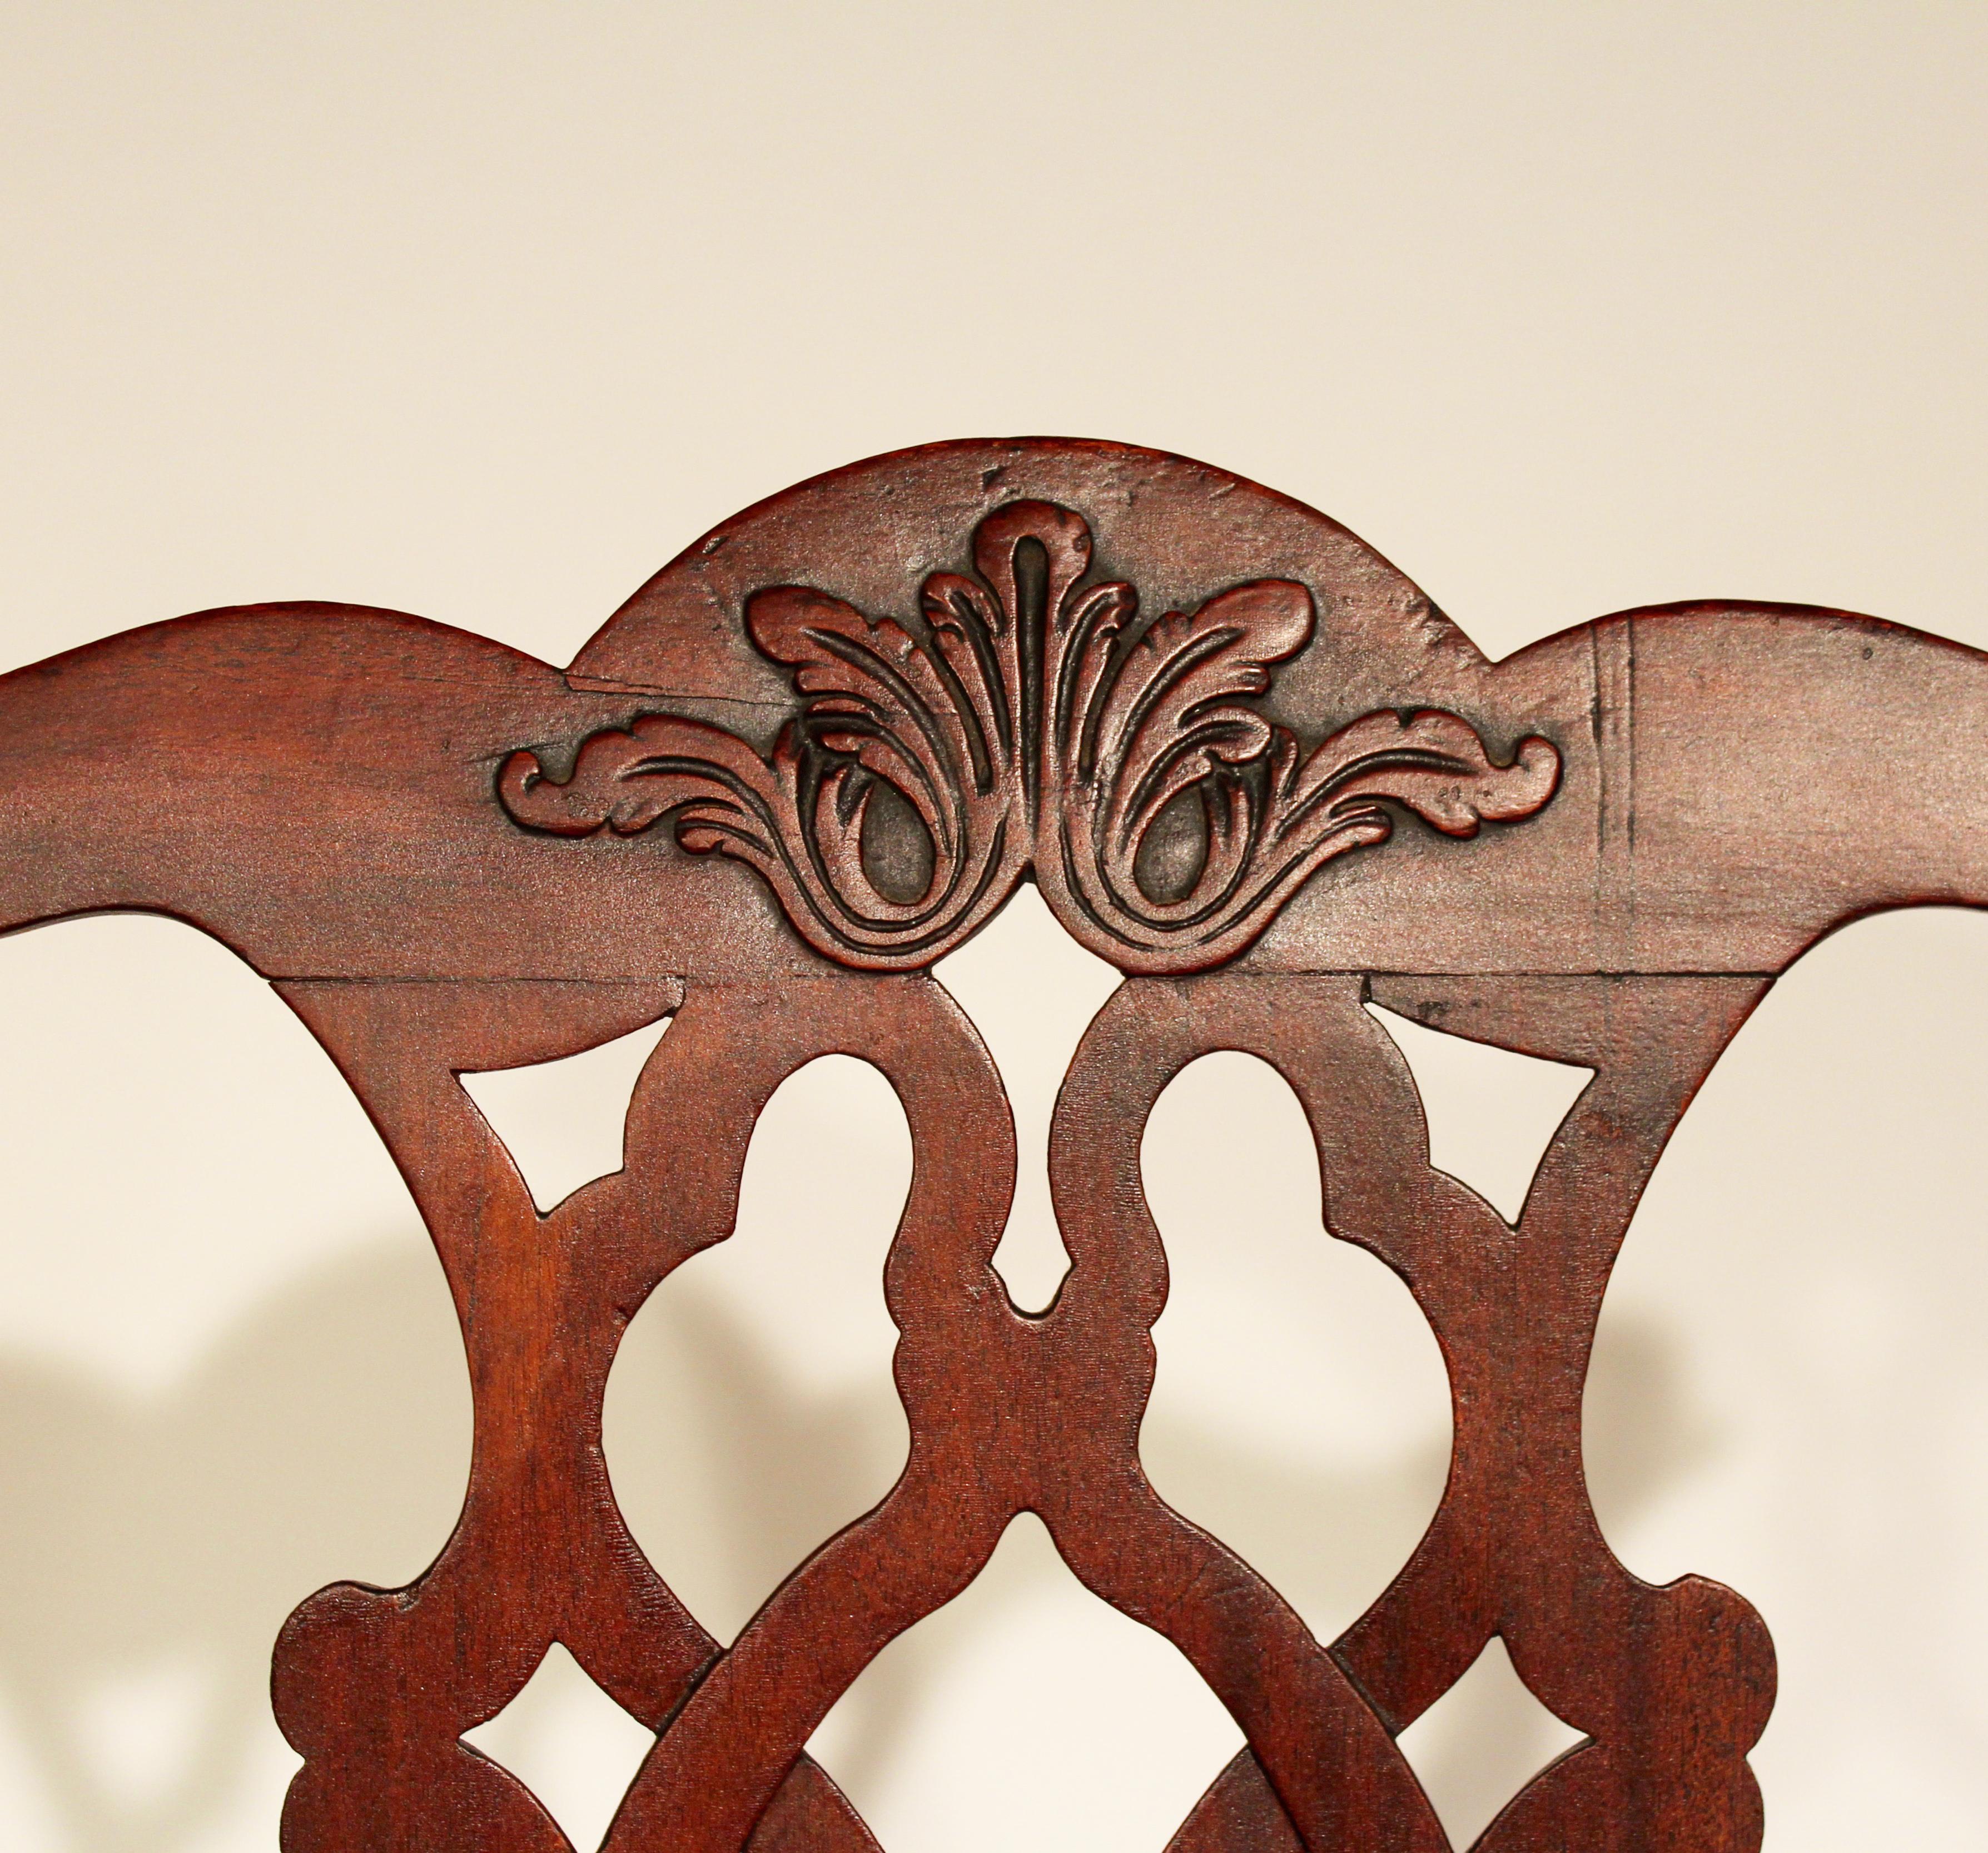 Paar Chippendale-Seitenstühle aus dem 18. Jahrhundert, möglicherweise in Maryland hergestellt, mit einer reliefgeschnitzten Kammschiene und gotisch geschnitzten Kabriole-Beinen mit Muscheln an den Knien, die in Klauen- und Kugelfüßen enden.